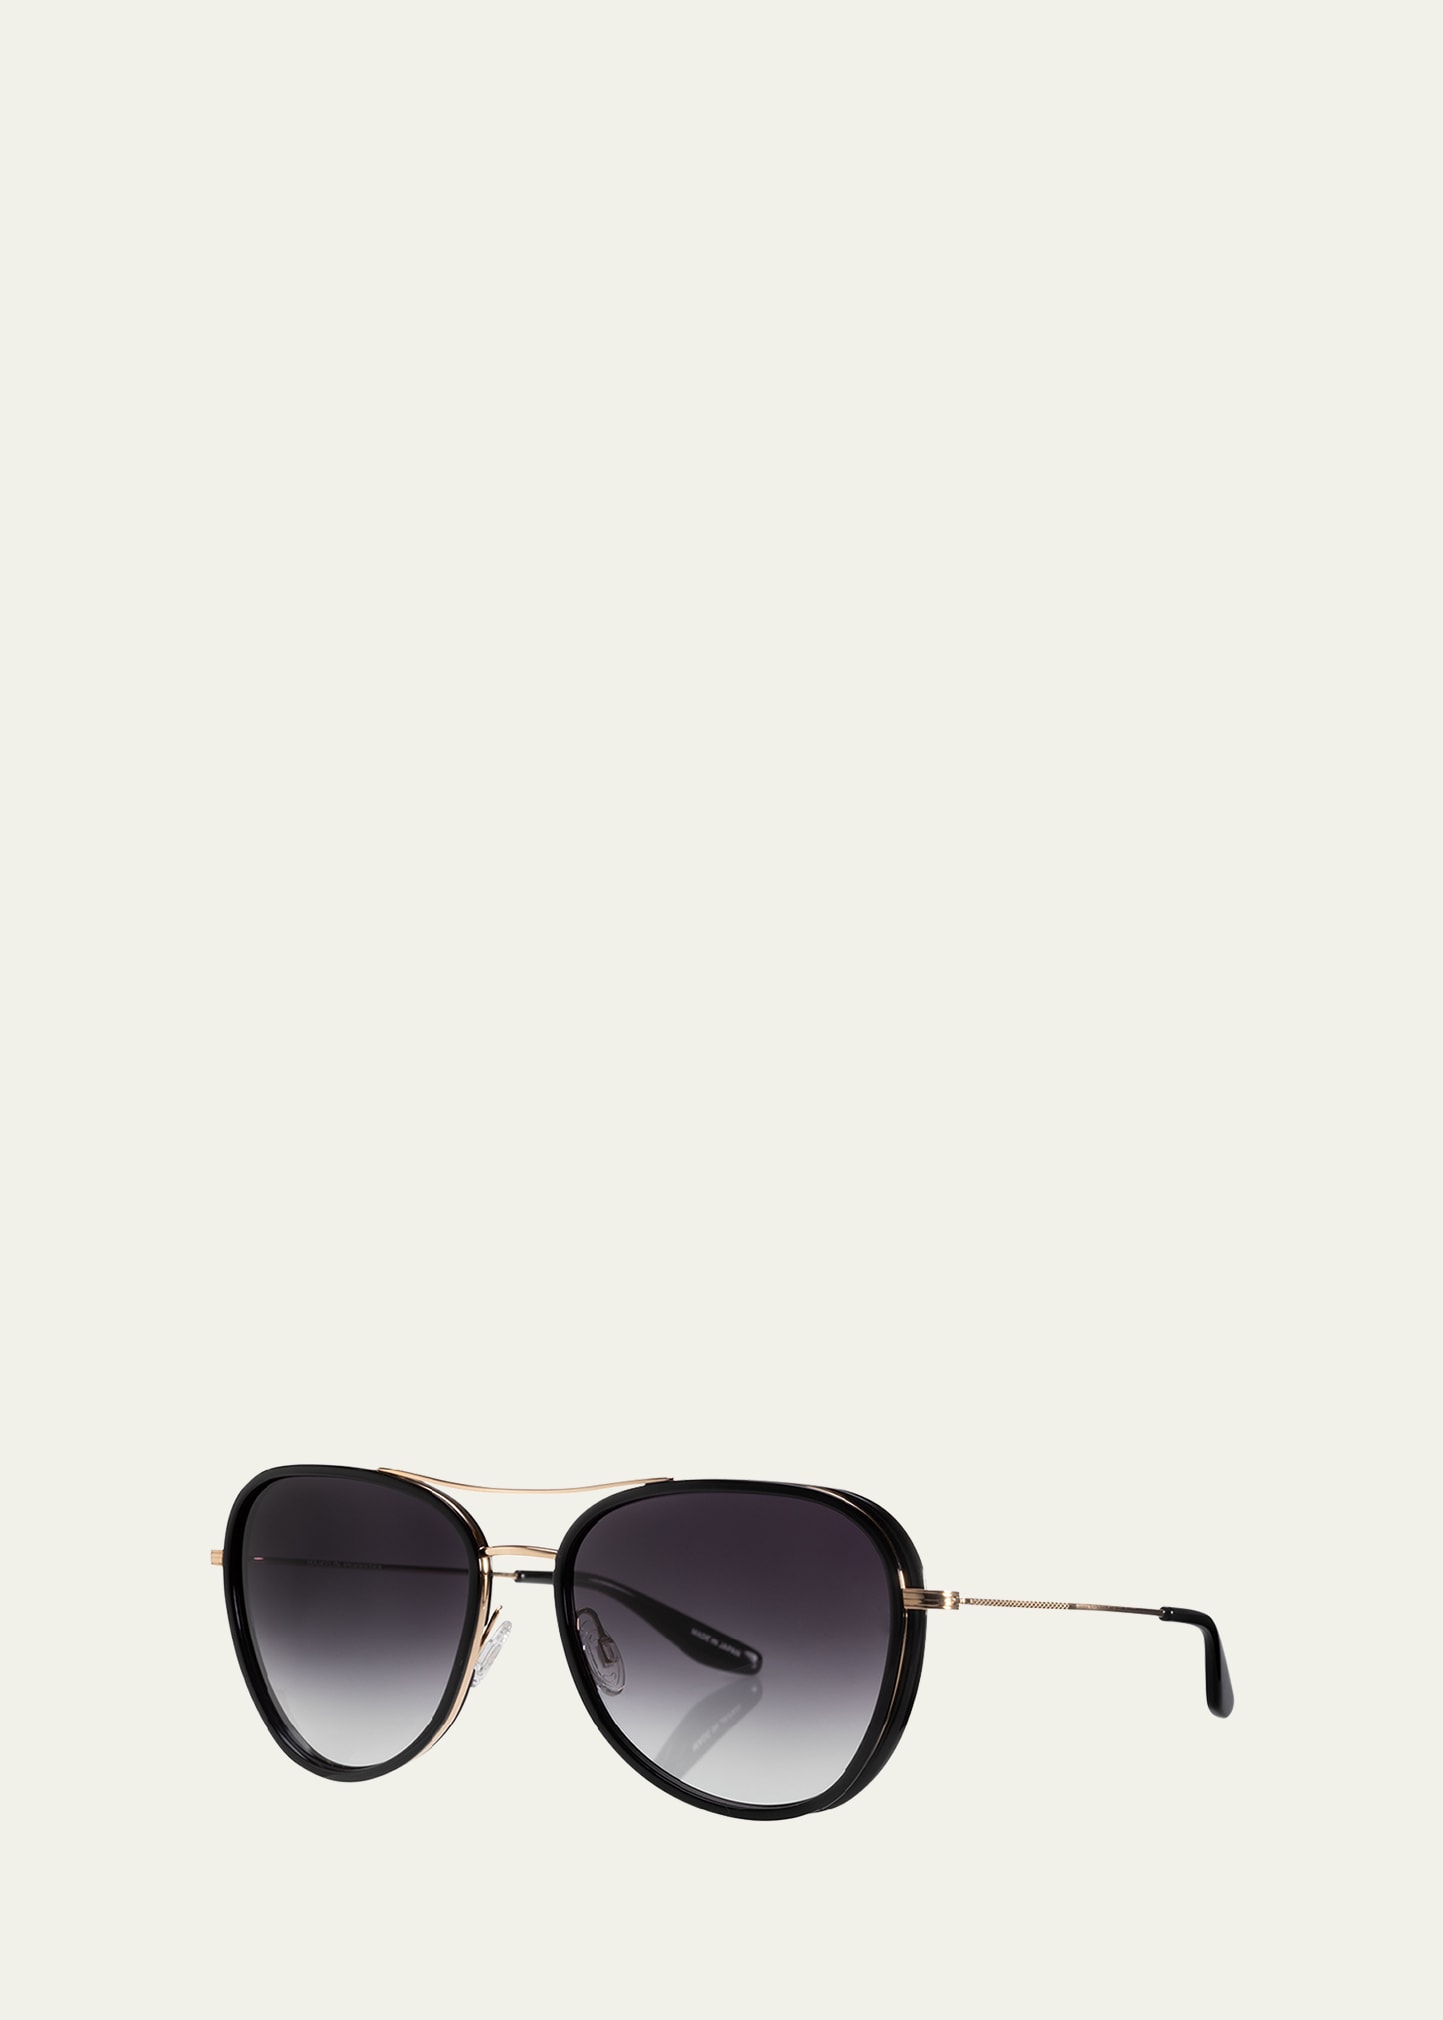 Barton Perreira Gesner Acetate & Titanium Aviator Sunglasses